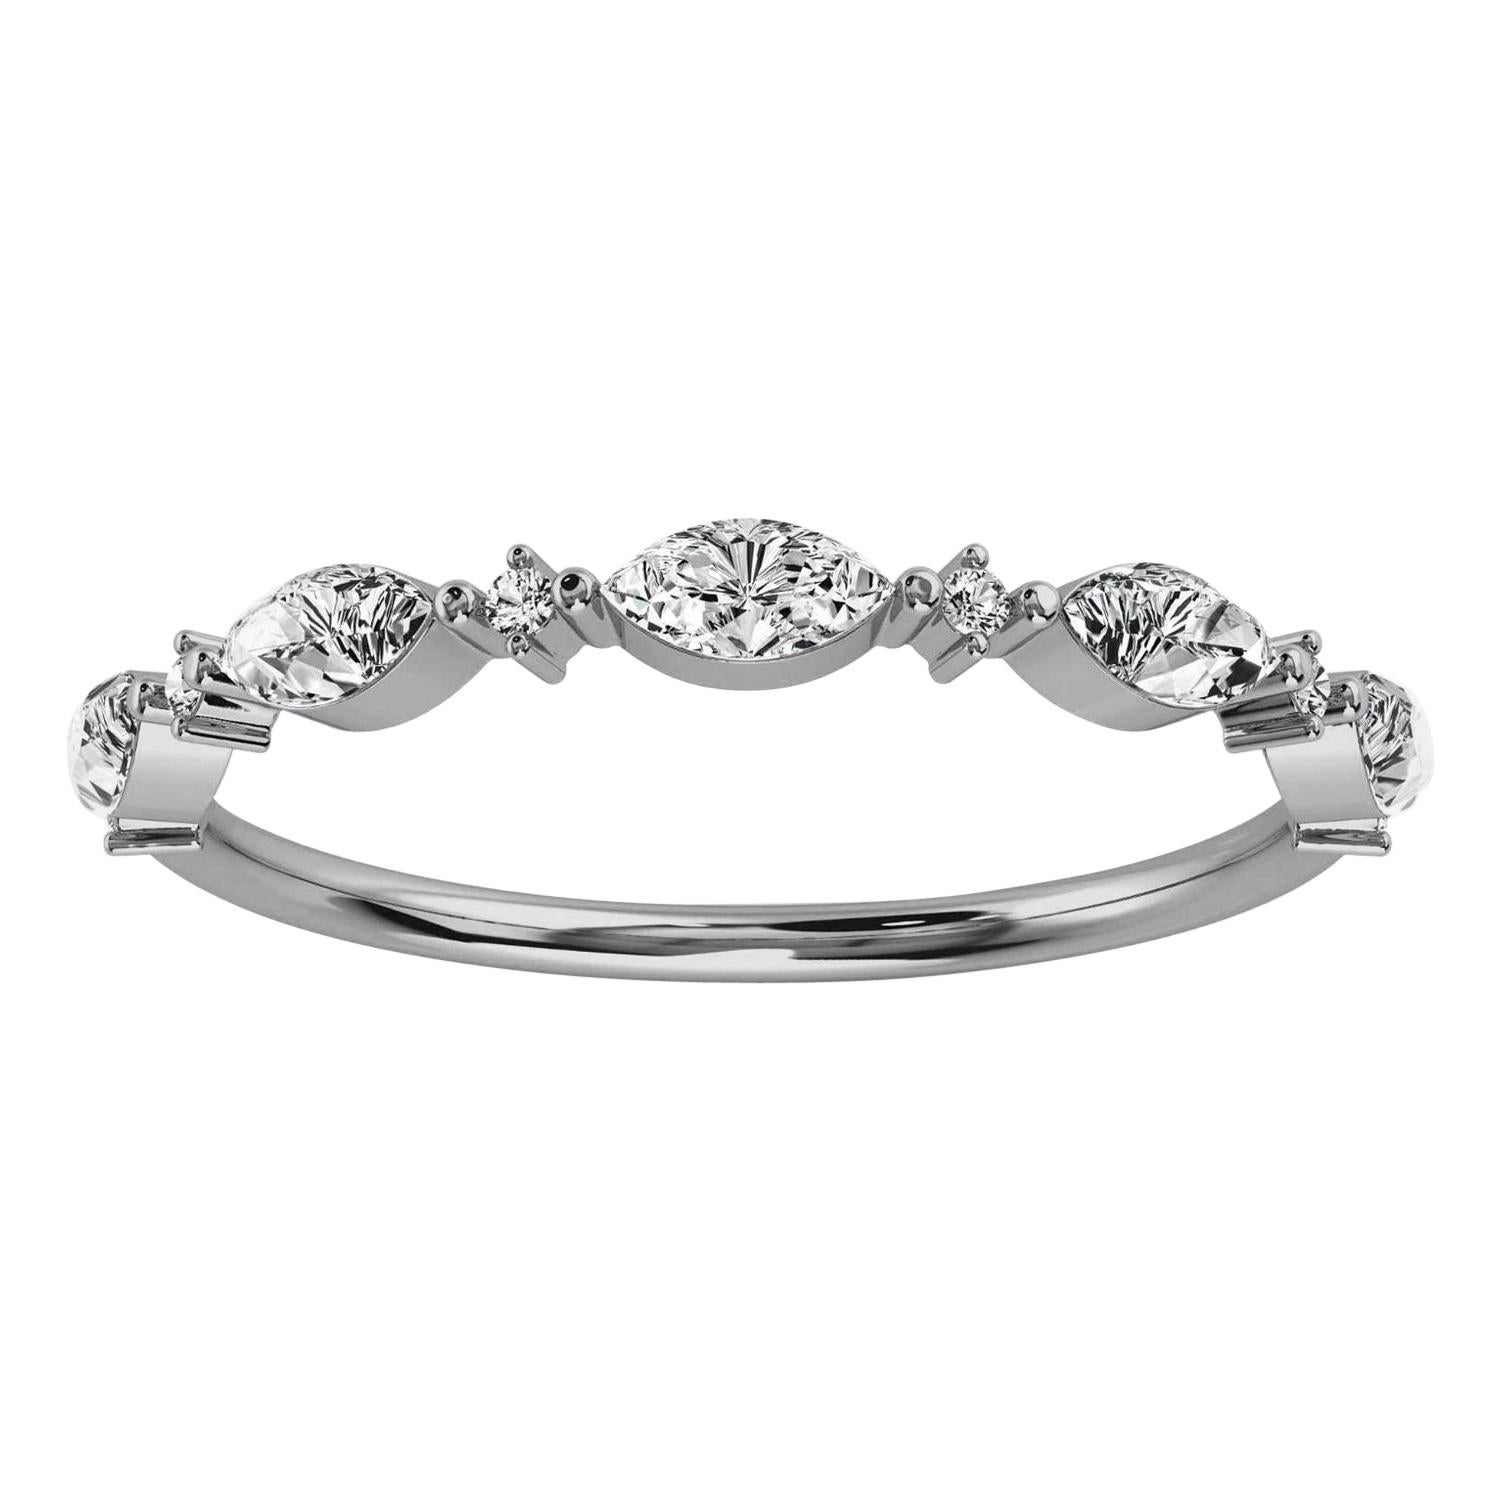 Platinum Petite Marquise Organic Design Diamond Ring '1/4 Ct. Tw'